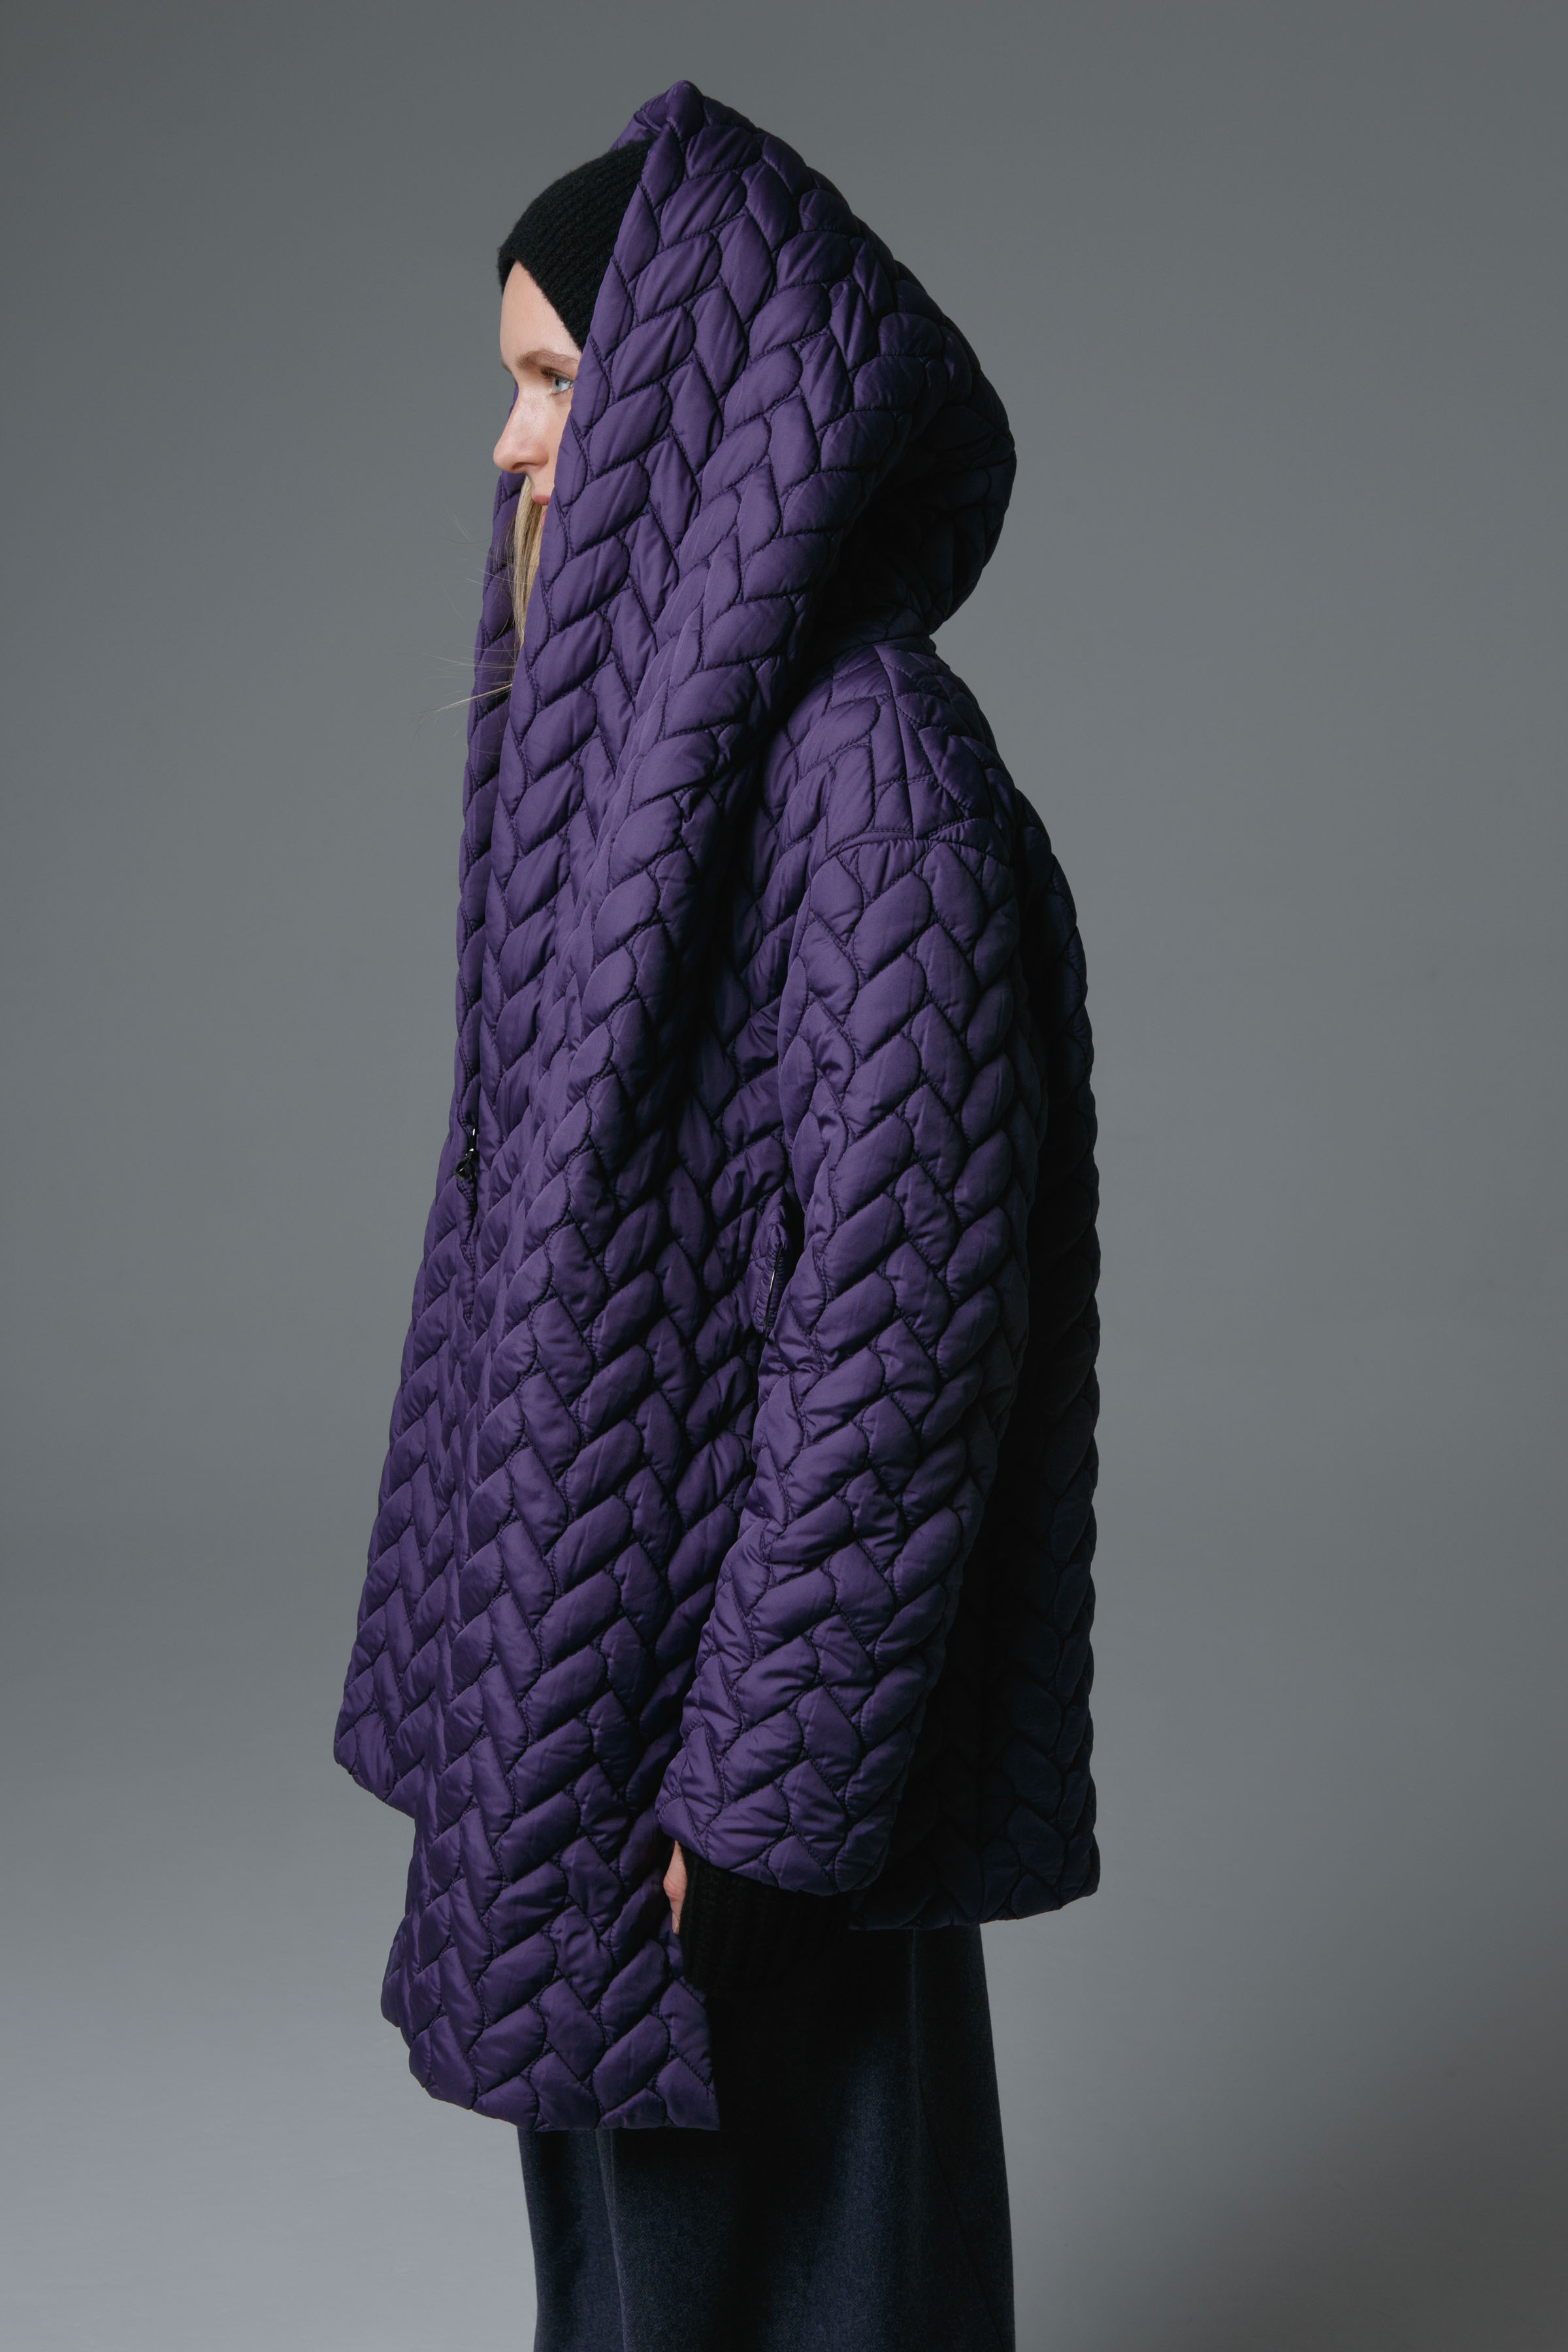 Куртка с капюшоном "Косы" 31 Фиолетовый (violet) от Lesel (Лесель)! Заказывайте по ✆ 8 (800) 777 02 37